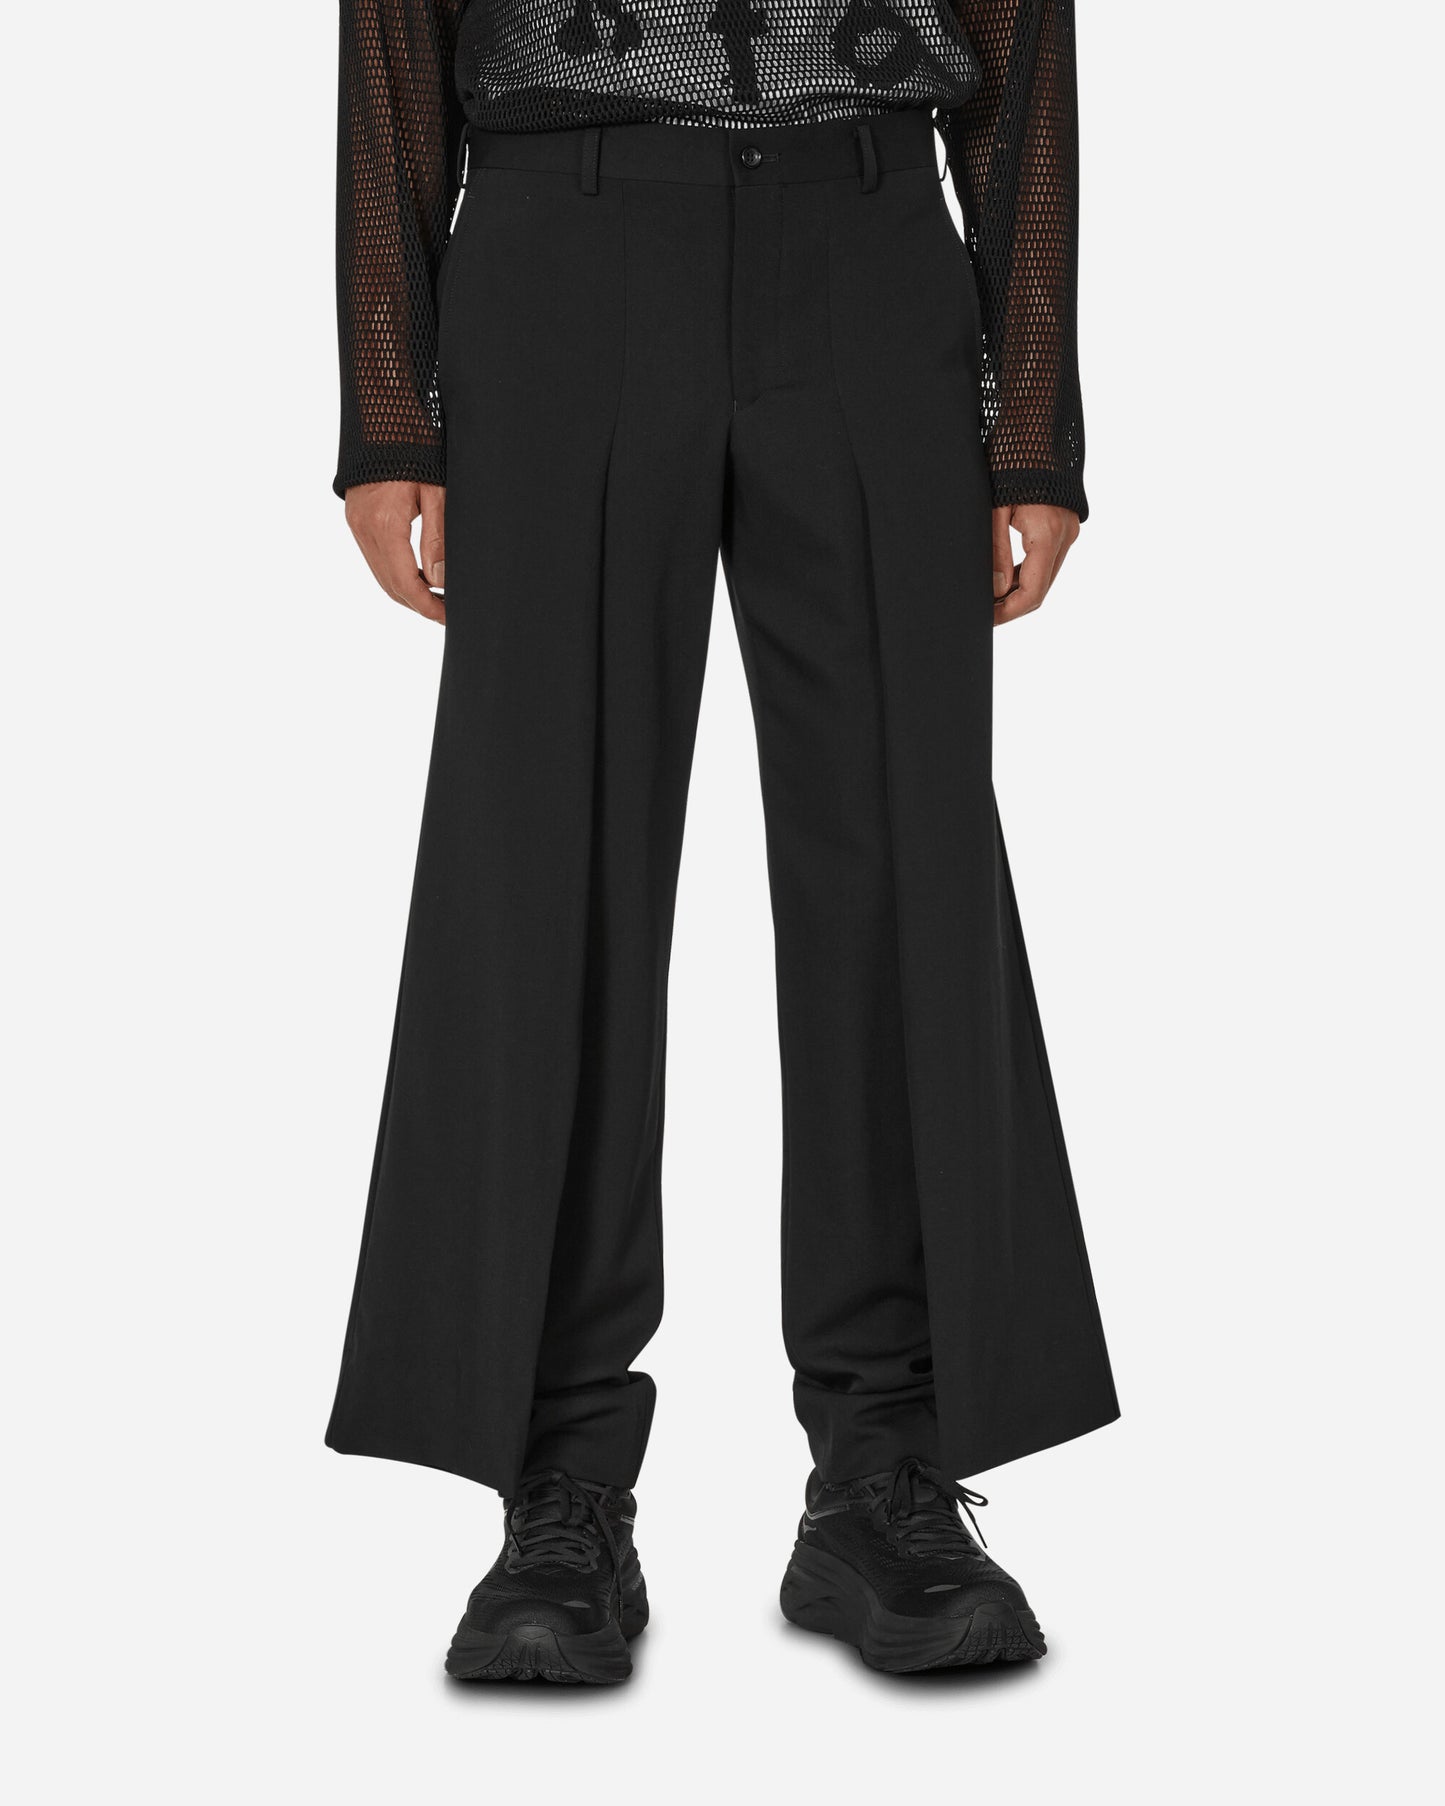 Comme Des Garçons Homme Plus Men'S Pant Black/Black Pants Trousers PL-P047-W23 1